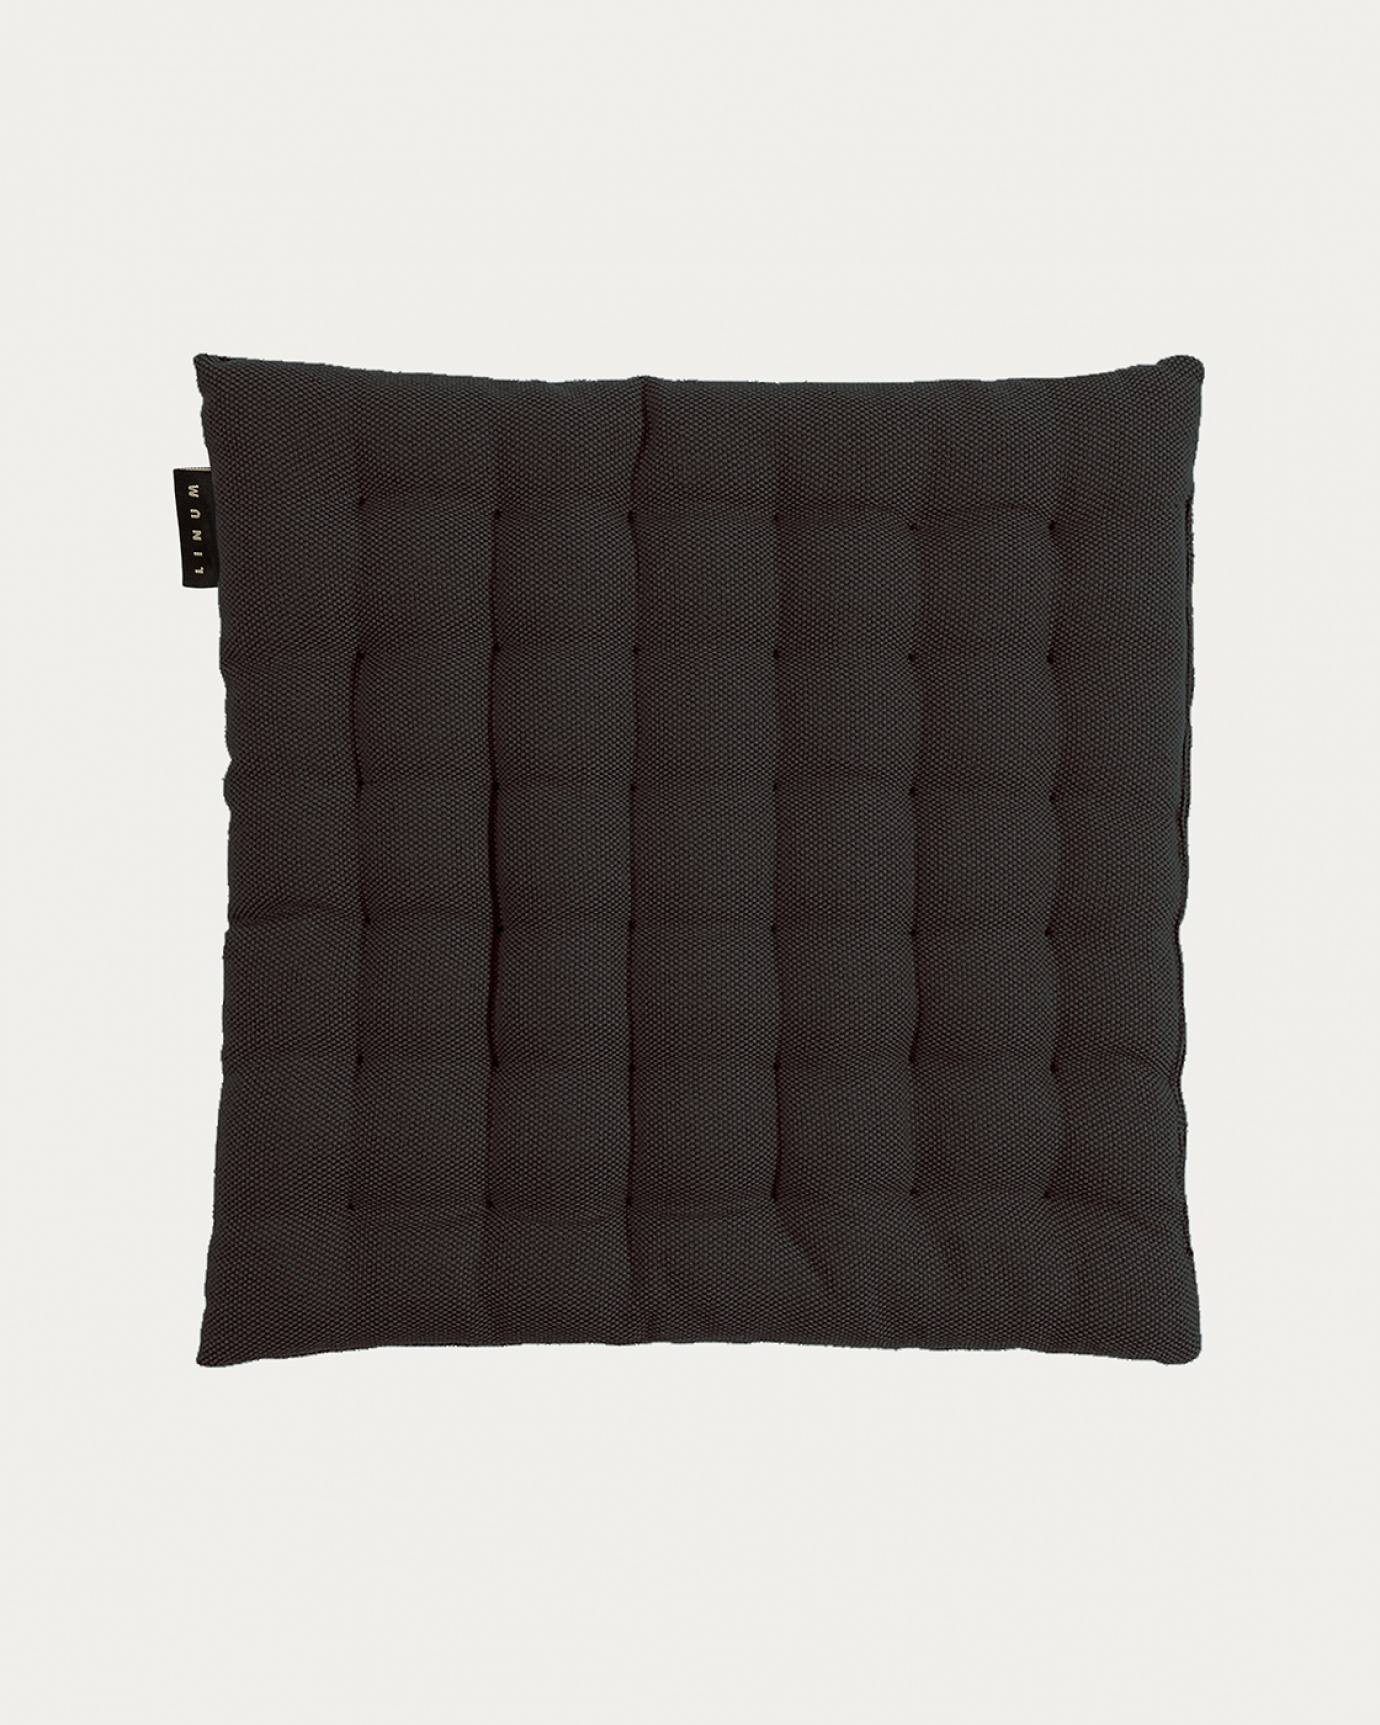 Produktbild schwarze melange PEPPER Sitzkissen aus weicher Baumwolle mit Füllung aus recyceltem Polyester von LINUM DESIGN. Größe 40x40 cm.